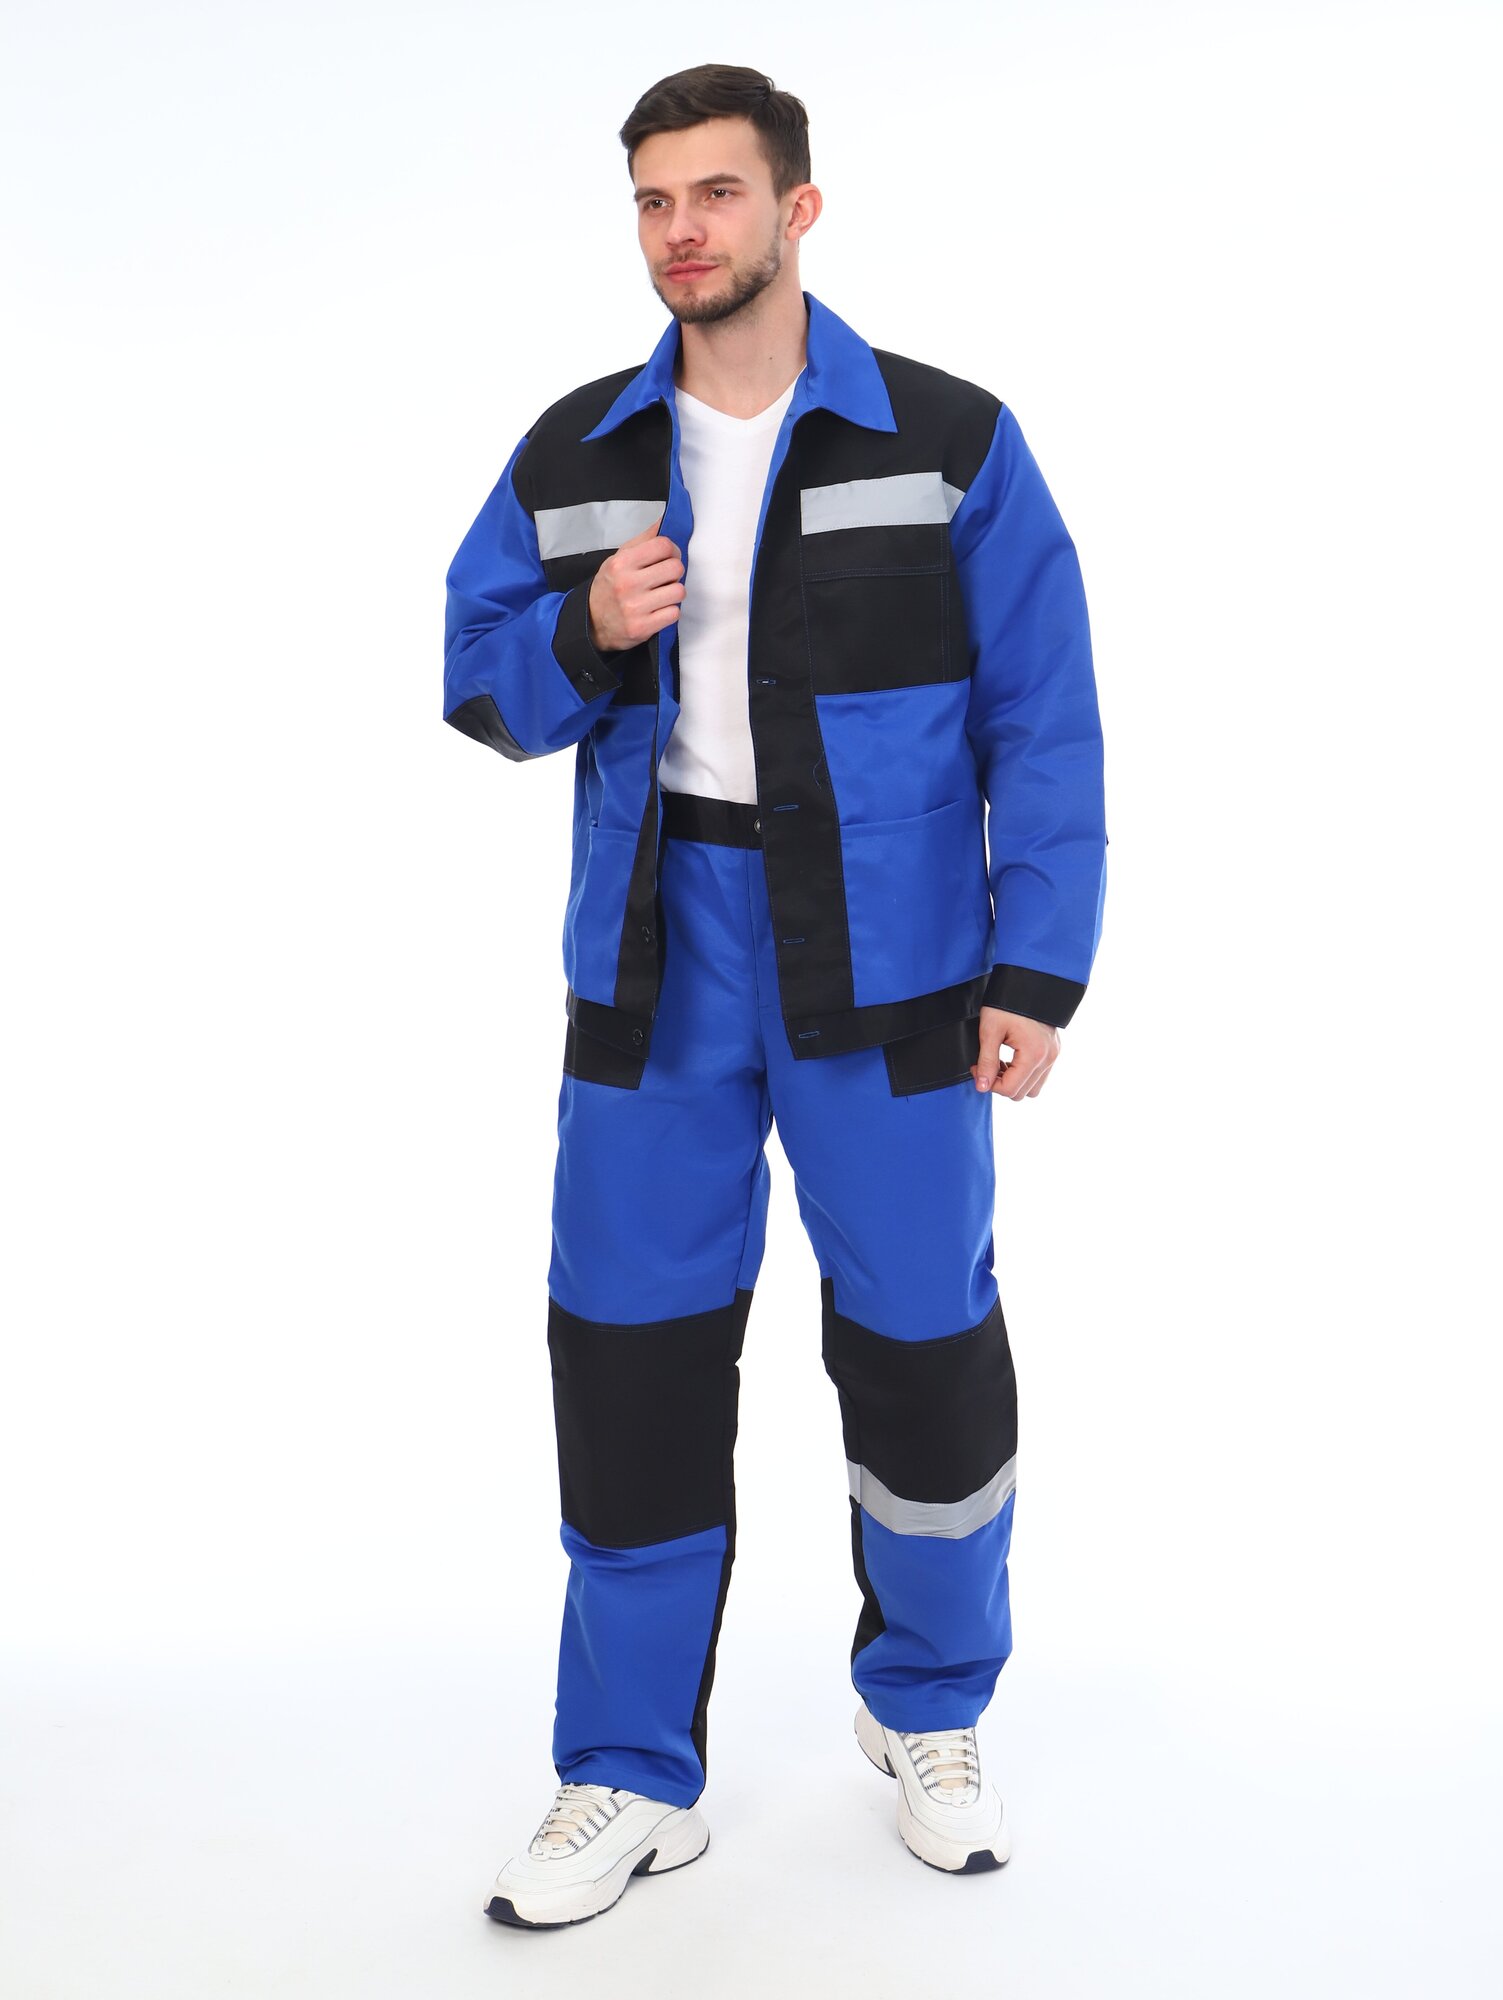 Костюм мужской рабочий (куртка + брюки), спецовка для ремонта, строительства, дачи, цвет синий/черный, размер 60-62 (182-188)